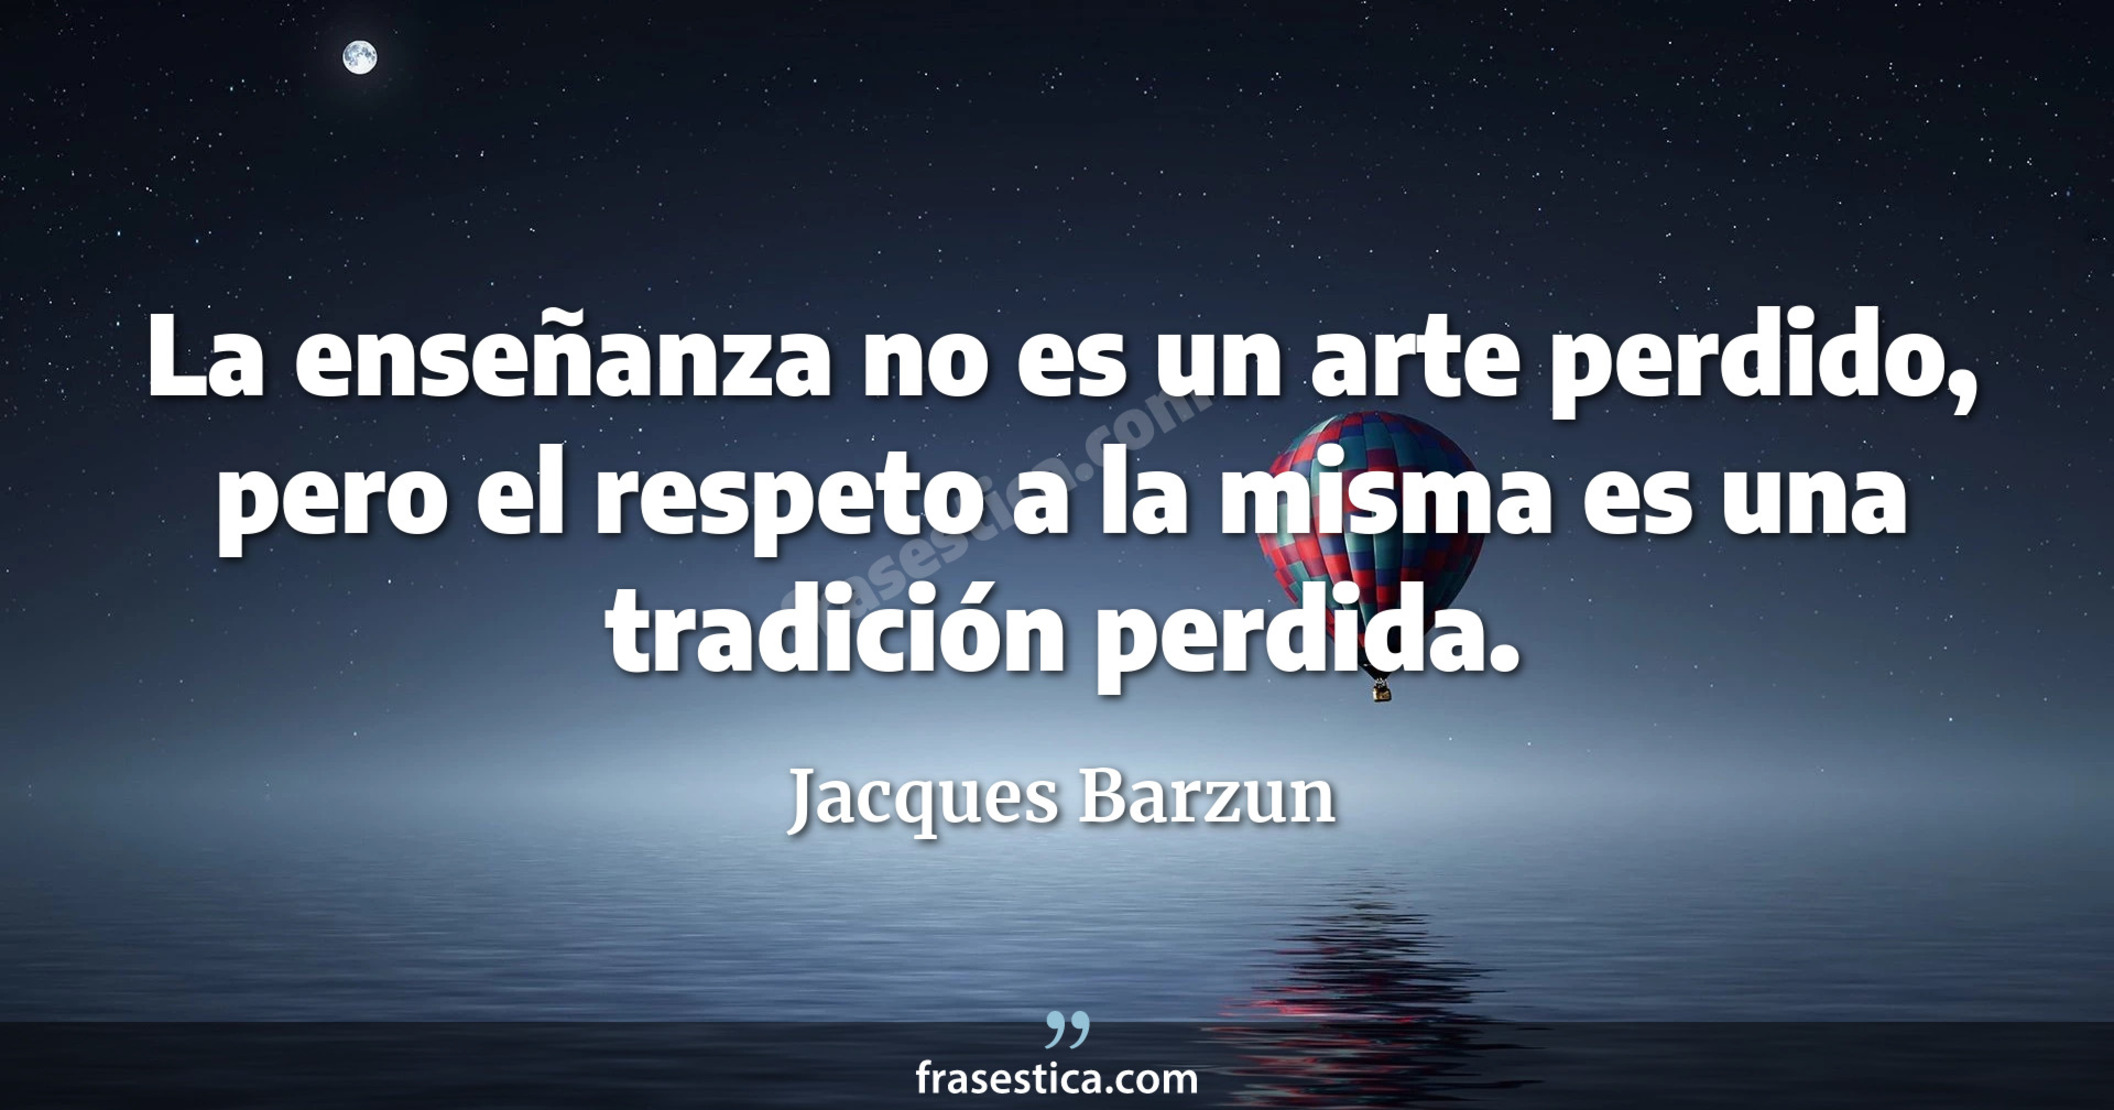 La enseñanza no es un arte perdido, pero el respeto a la misma es una tradición perdida. - Jacques Barzun